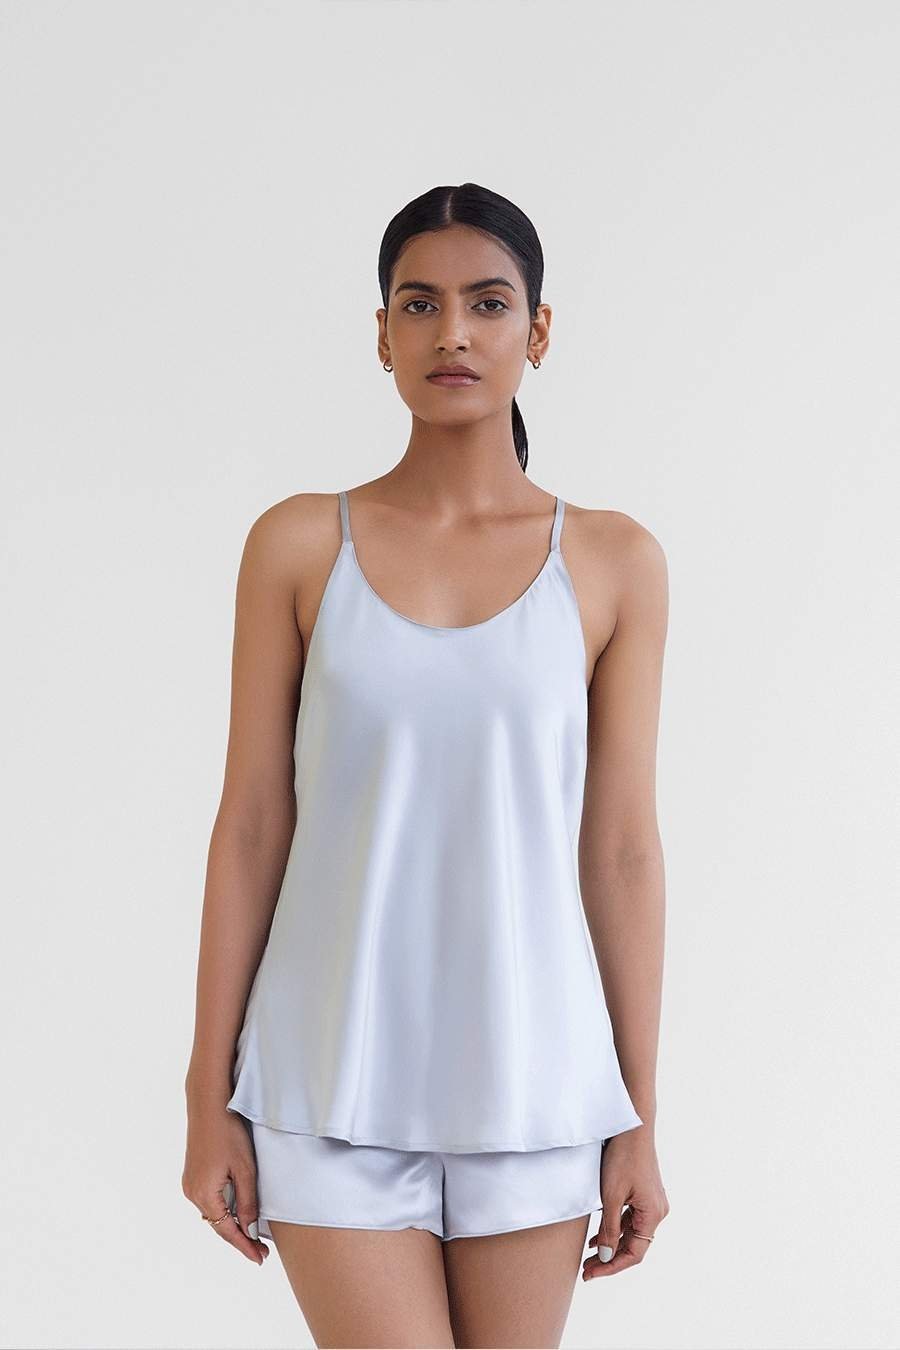 Lisingtool Pajamas for Women Set Women's Love Printed Ice Silk